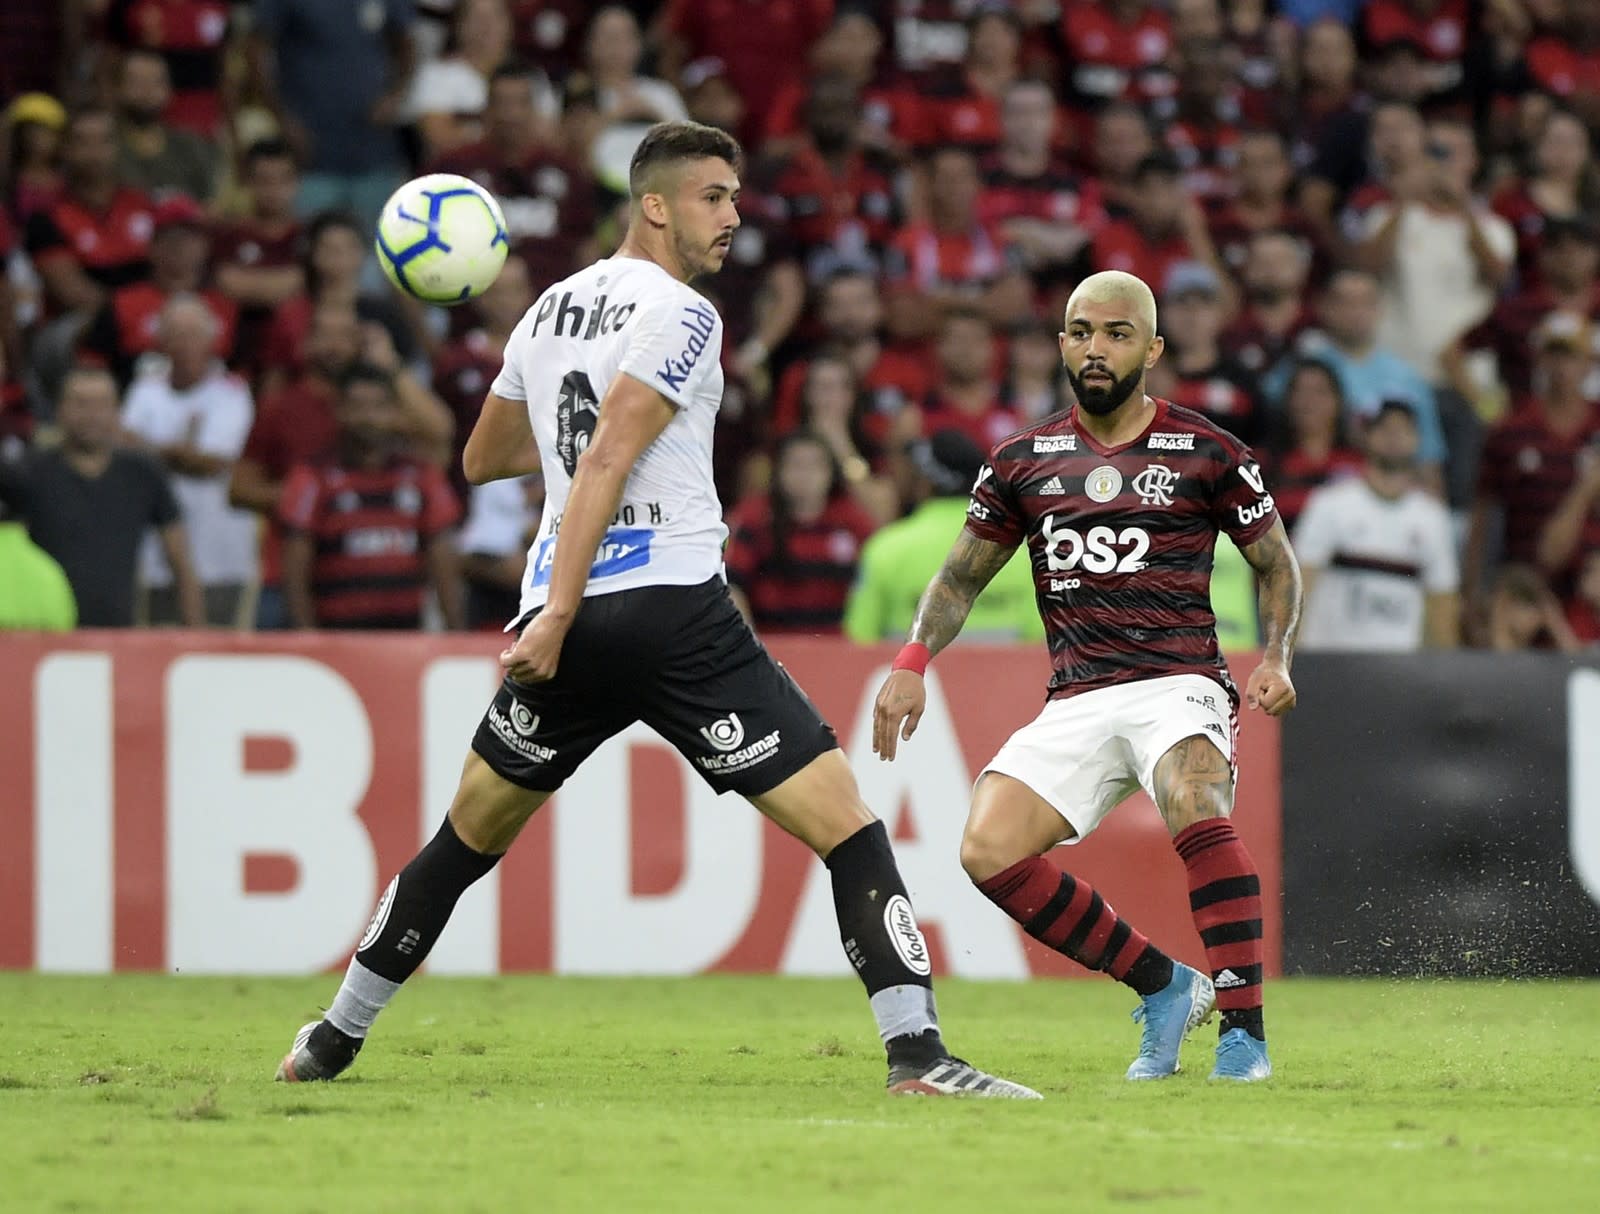 Notas da partida: Confira as notas para os destaques do Mengão entre Flamengo 1x0 Santos